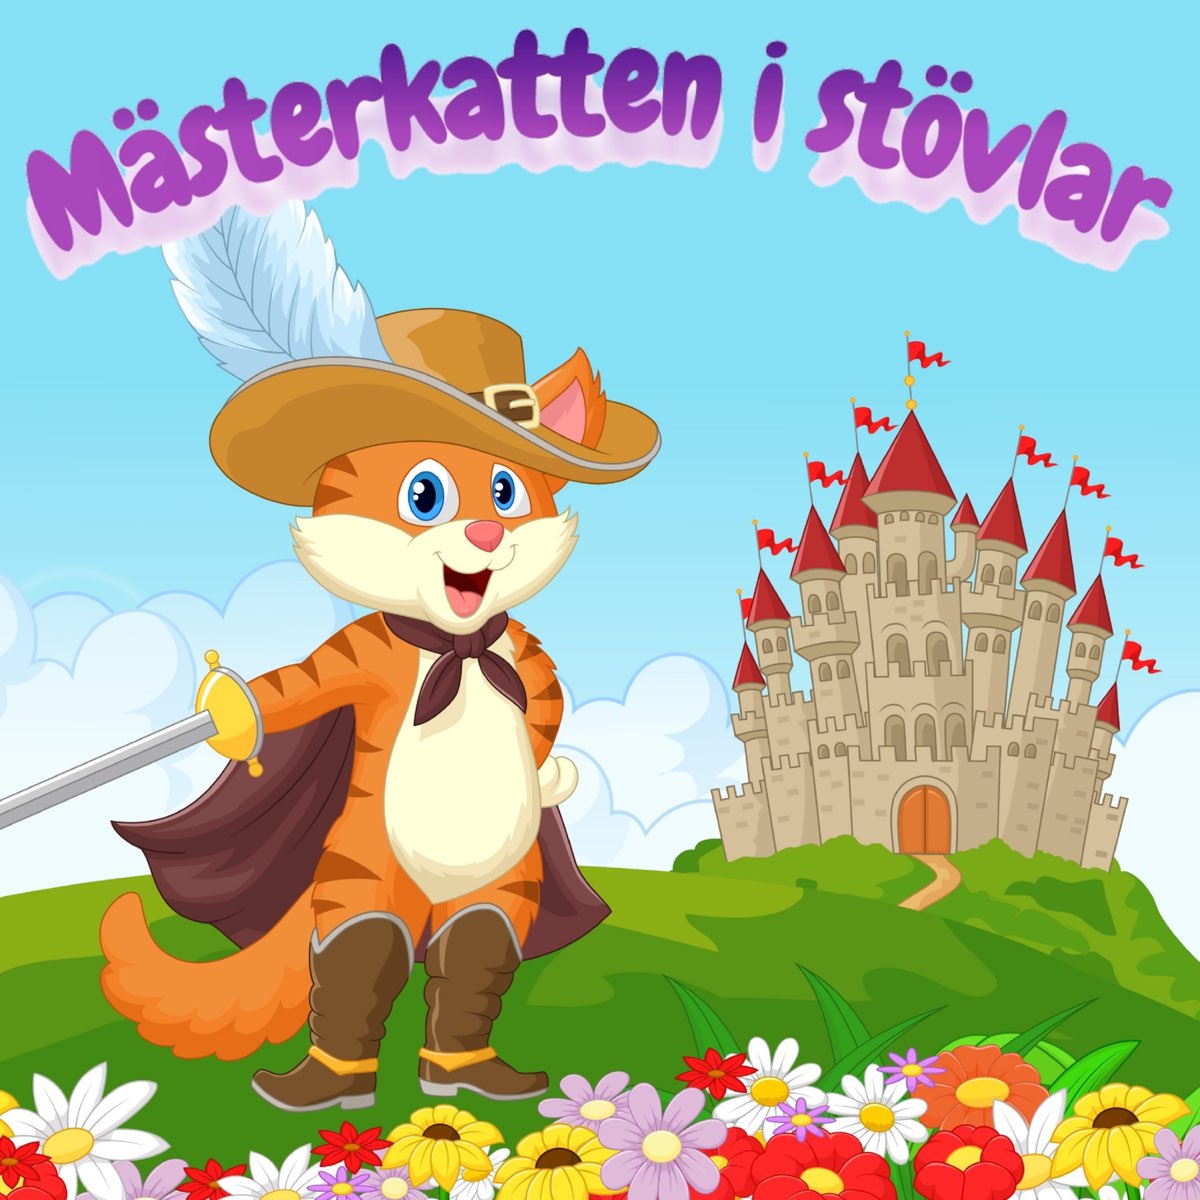 Mästerkatten i Stövlar - Album by Klassiska Sagor för Barn - Apple Music